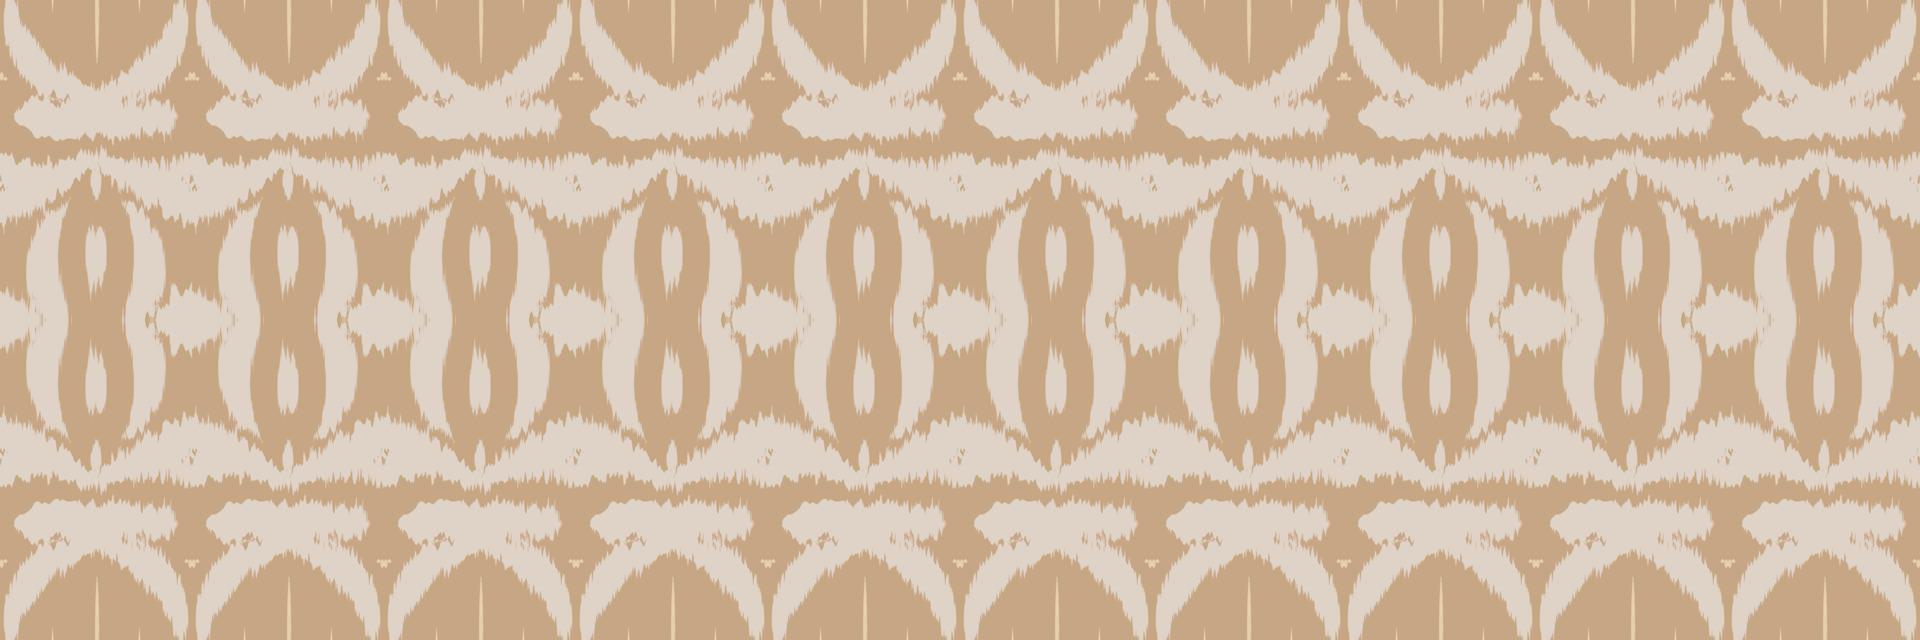 tissu ikat motif tribal africain sans couture. ethnique géométrique ikkat batik numérique vecteur conception textile pour impressions tissu sari mughal brosse symbole andains texture kurti kurtis kurtas